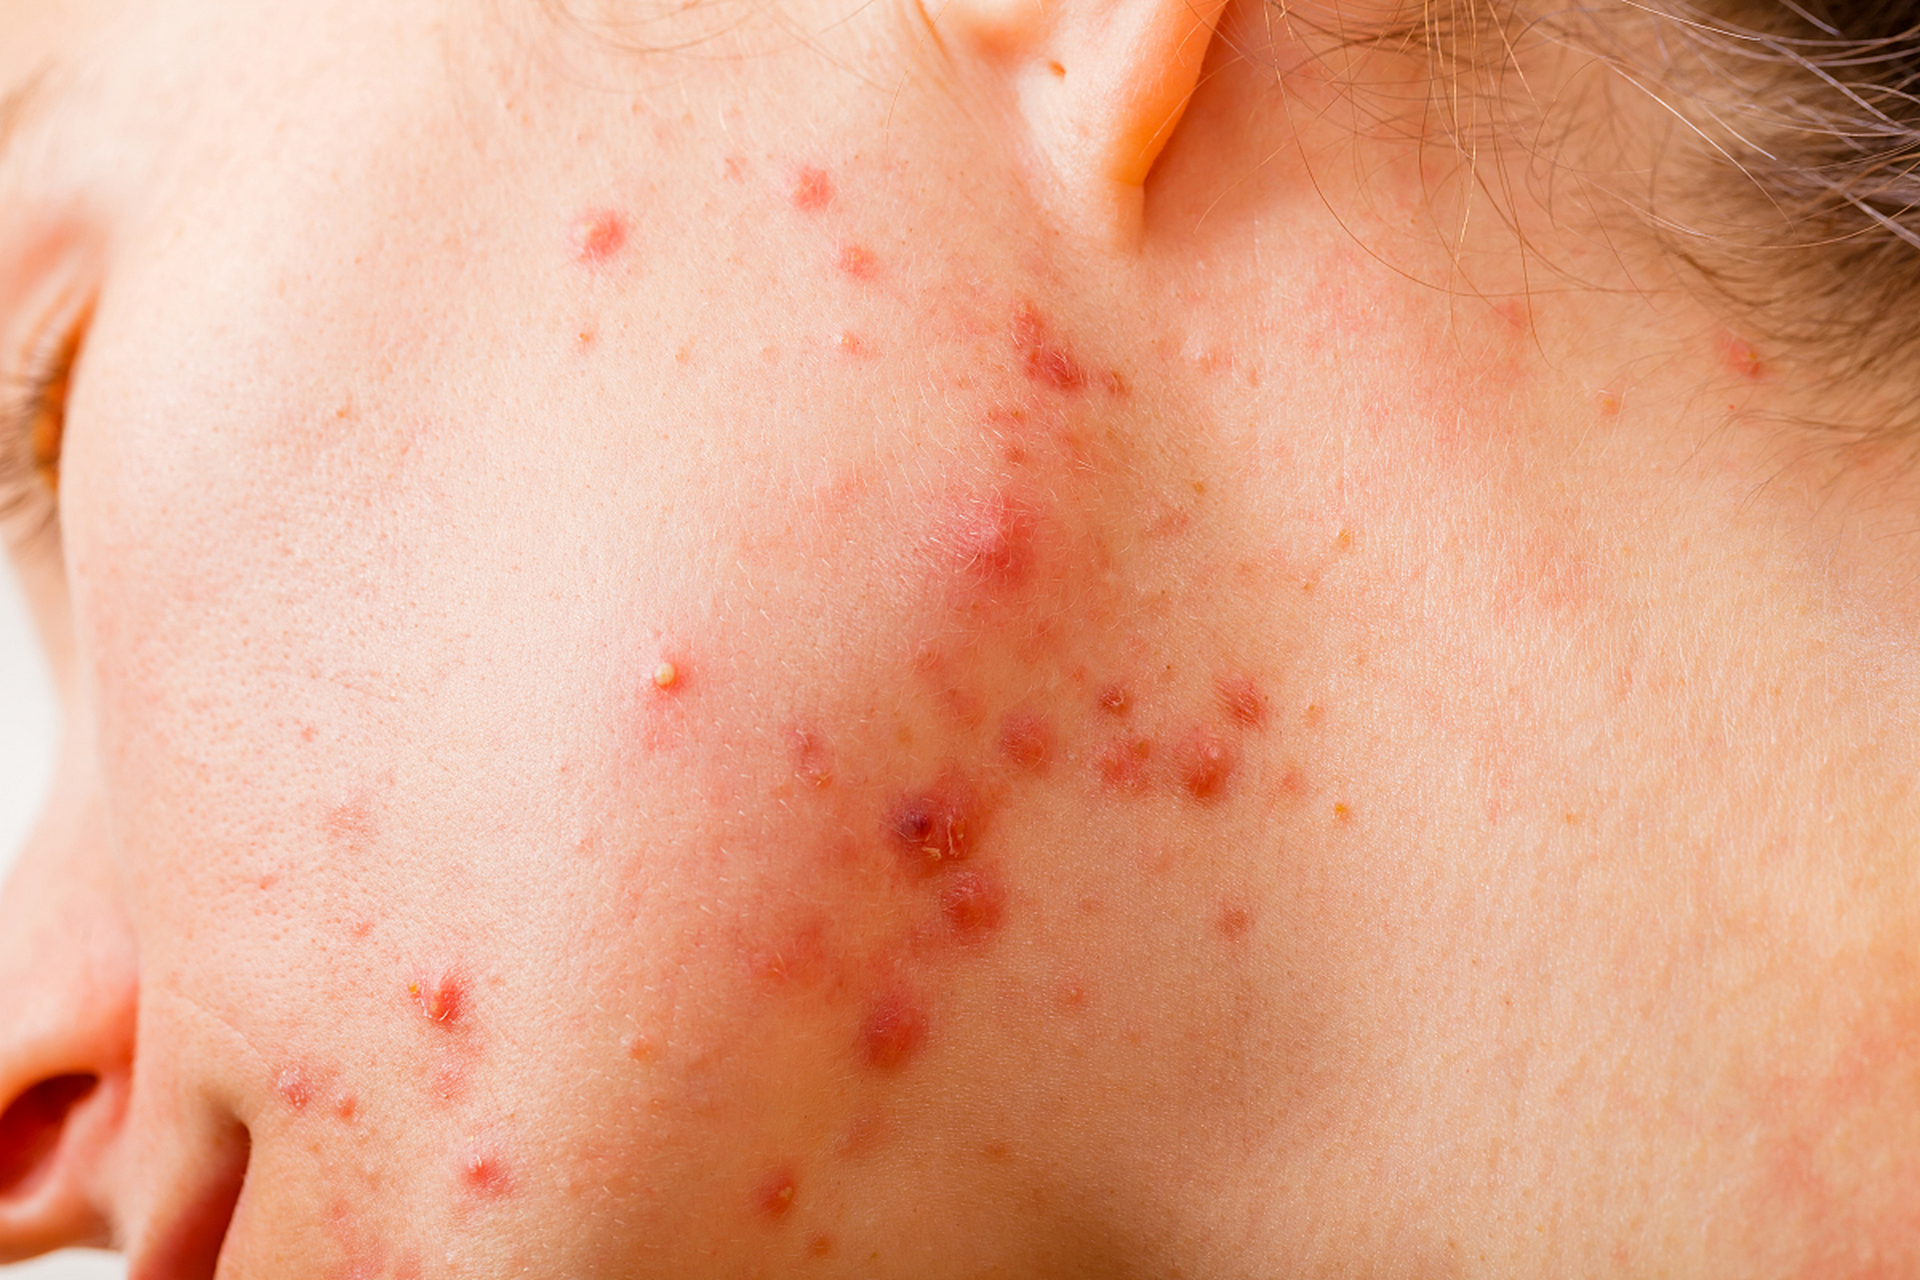 毛囊炎是许多人面临的常见皮肤问题,它导致脸上的痘痘和炎症,通过